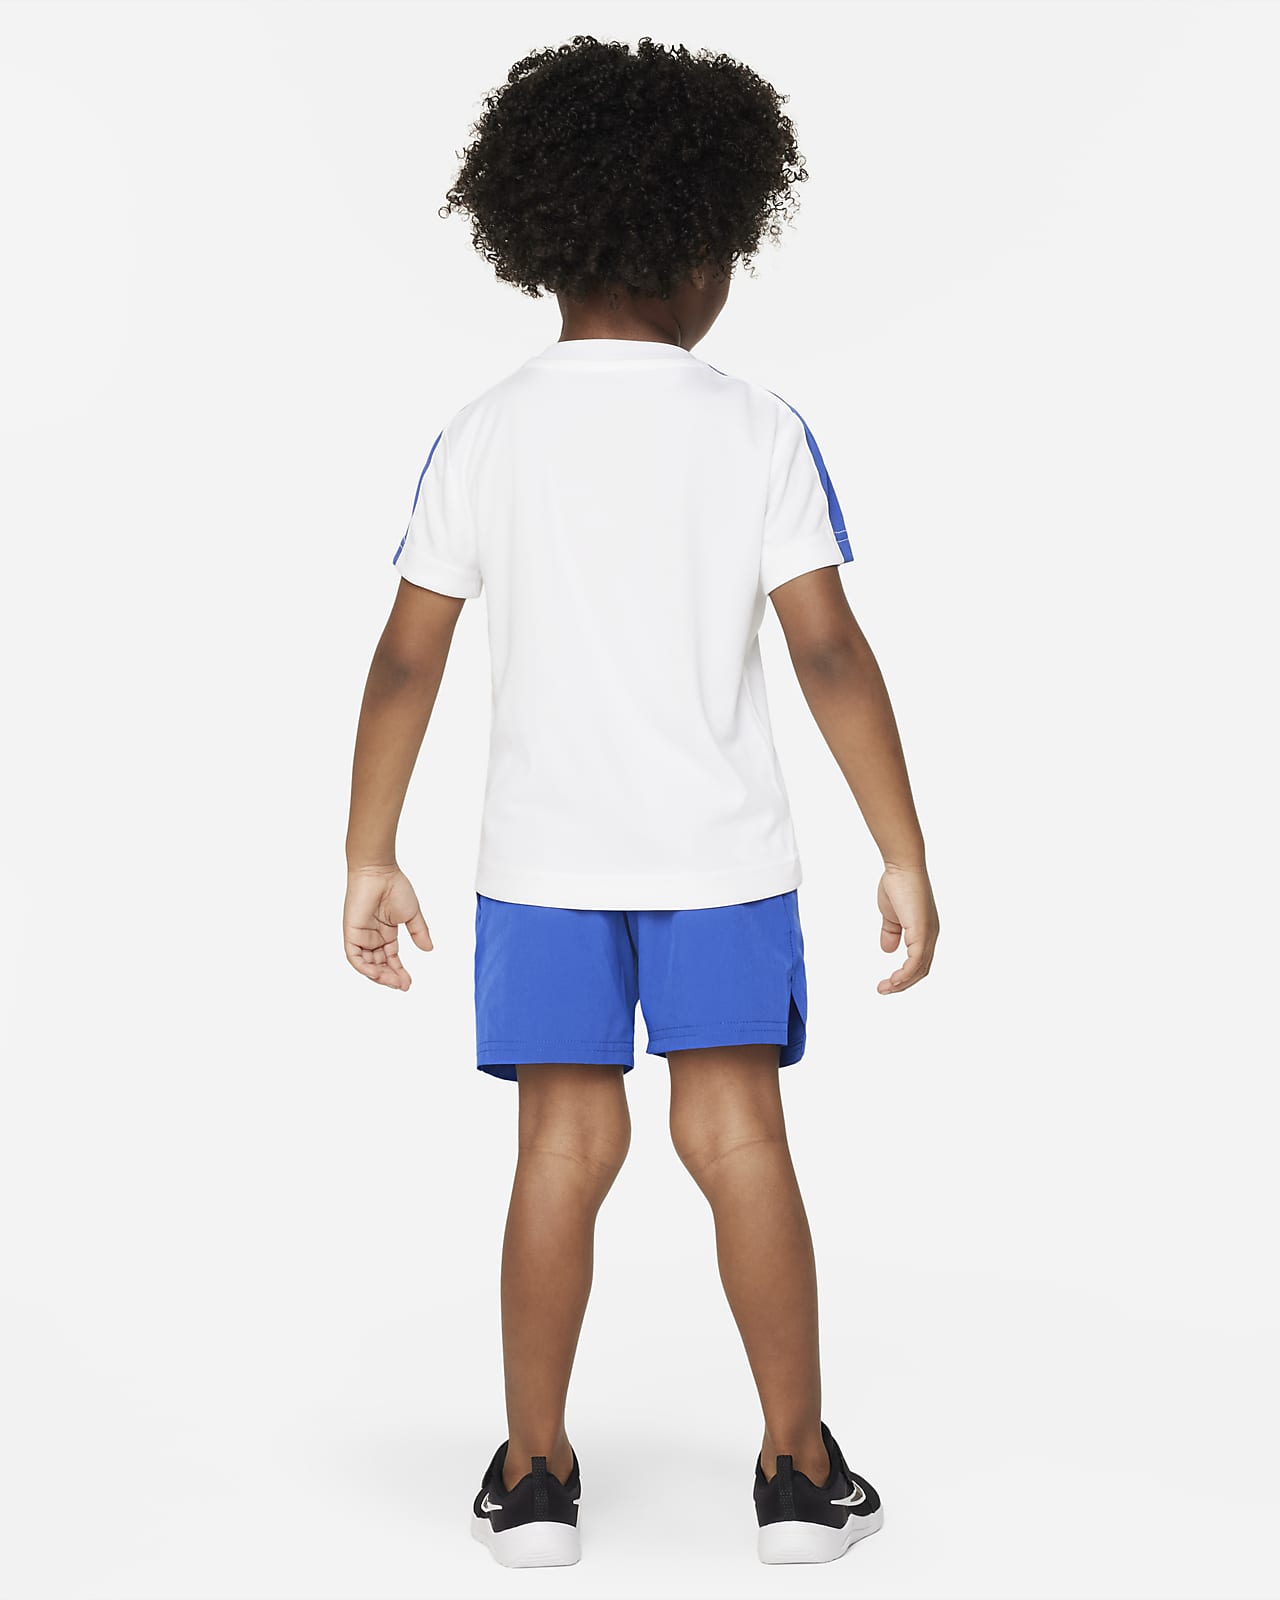 Slang raken Transformator Nike Tennis Shorts Set Toddler 2-Piece Set. Nike.com